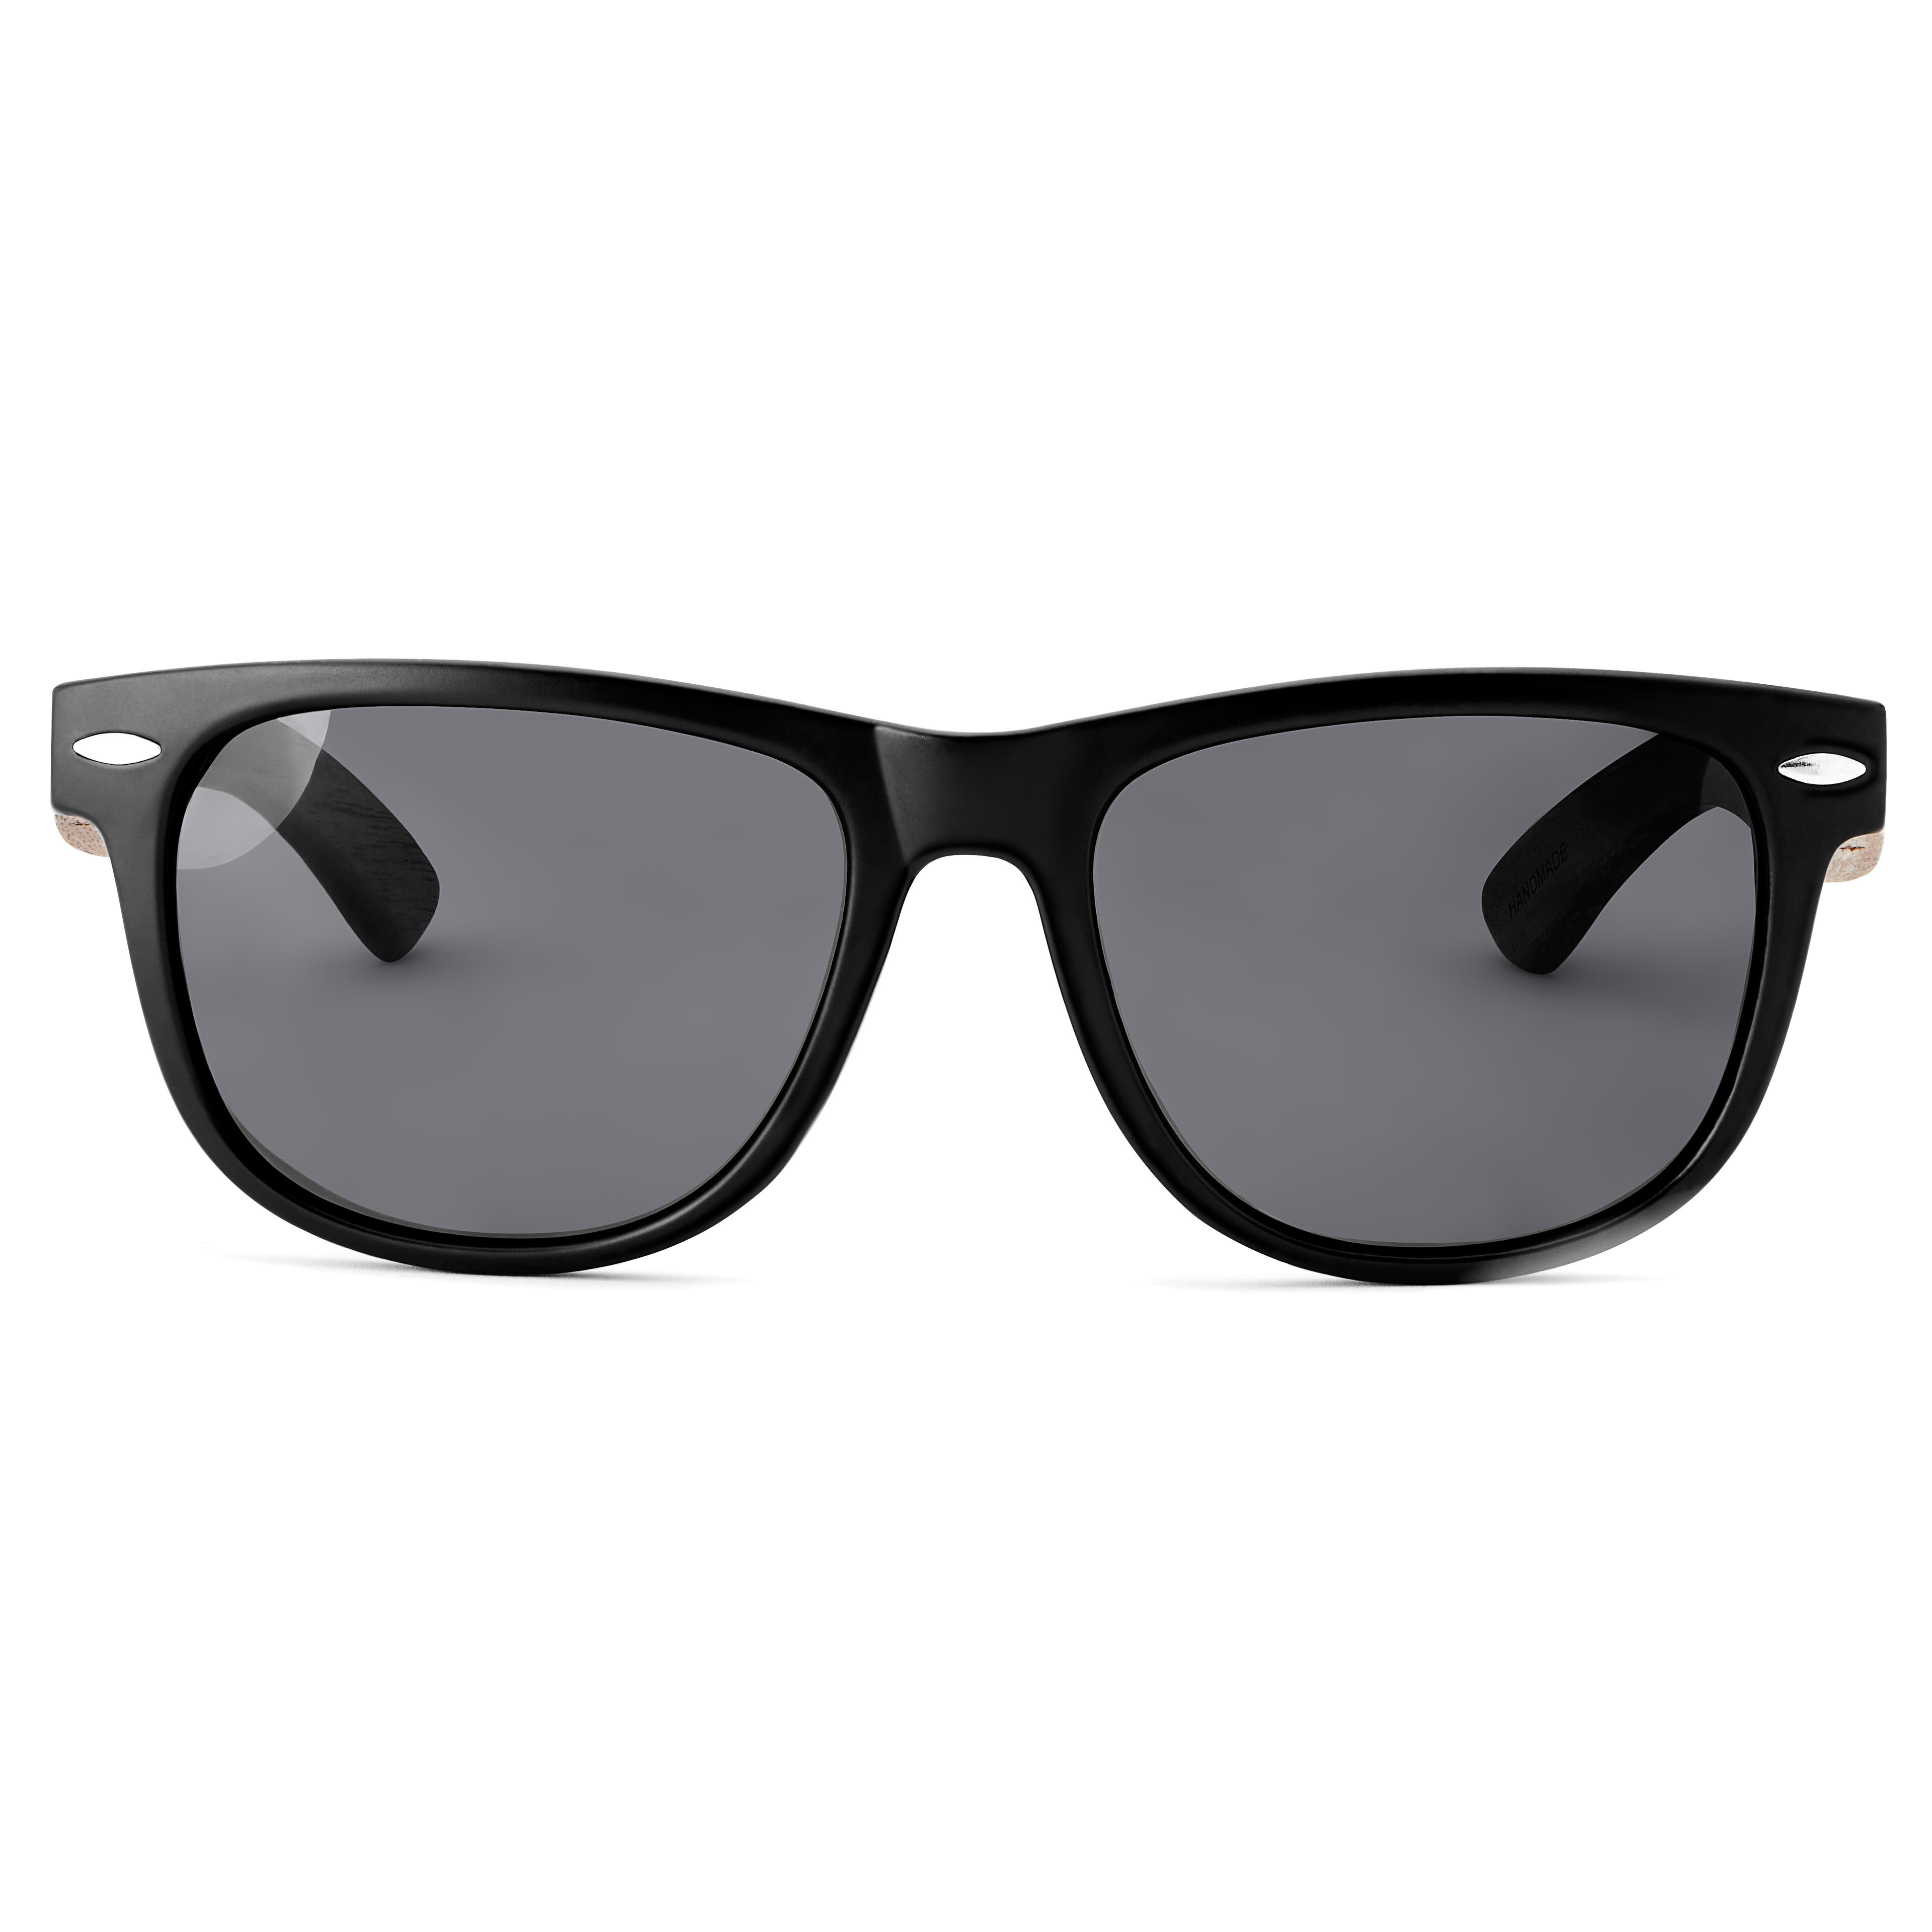 Sorte Retro Polariserede Solbriller med Brillestænger i Træ | På lager! |